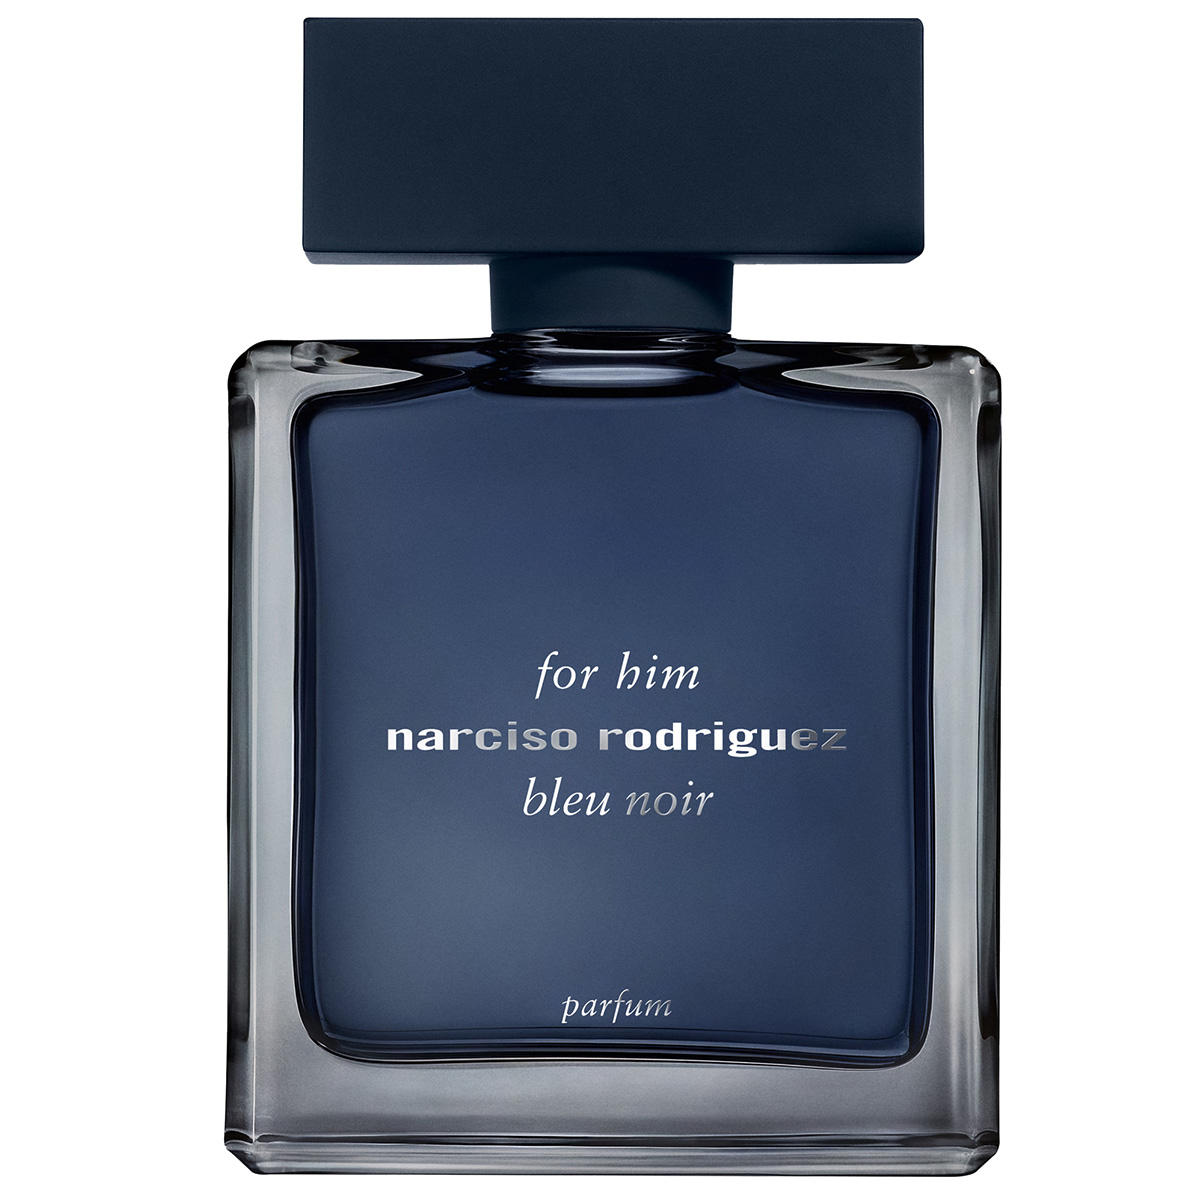 Narciso Rodriguez for him bleu noir Parfum  - 1